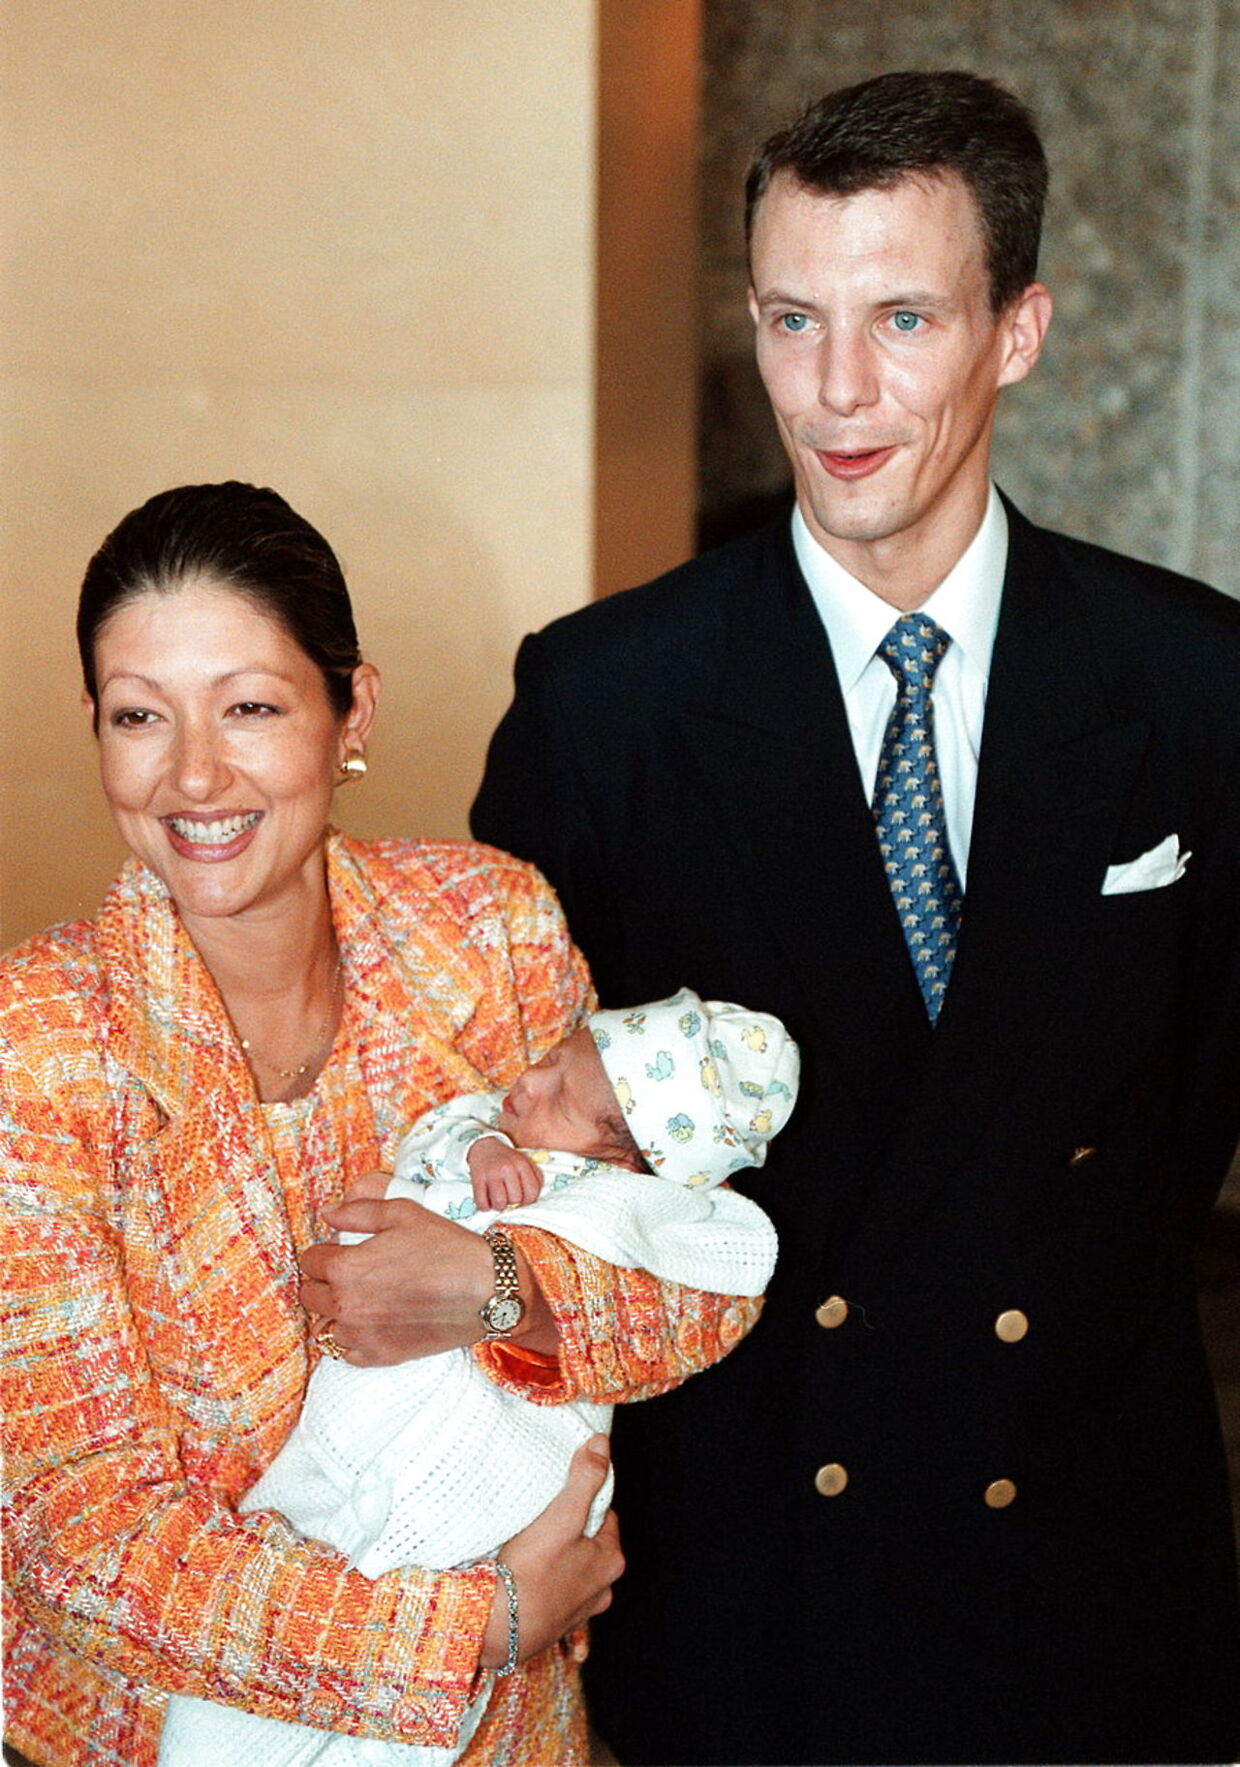 Den 2. september 1999 blev den lille nye danske prins (Nikolai), søn af Prinsesse Alexandra og Prins Joachim præsenteret for pressen. Det skete, da han og hans forældre forlod Rigshospitalet i København, hvor prinsen blev født den 28. august 1999. Familien kørte til Amalienborg Slot, hvor de opholder sig i et par dage, indtil de tager hjem til Schackenborg.